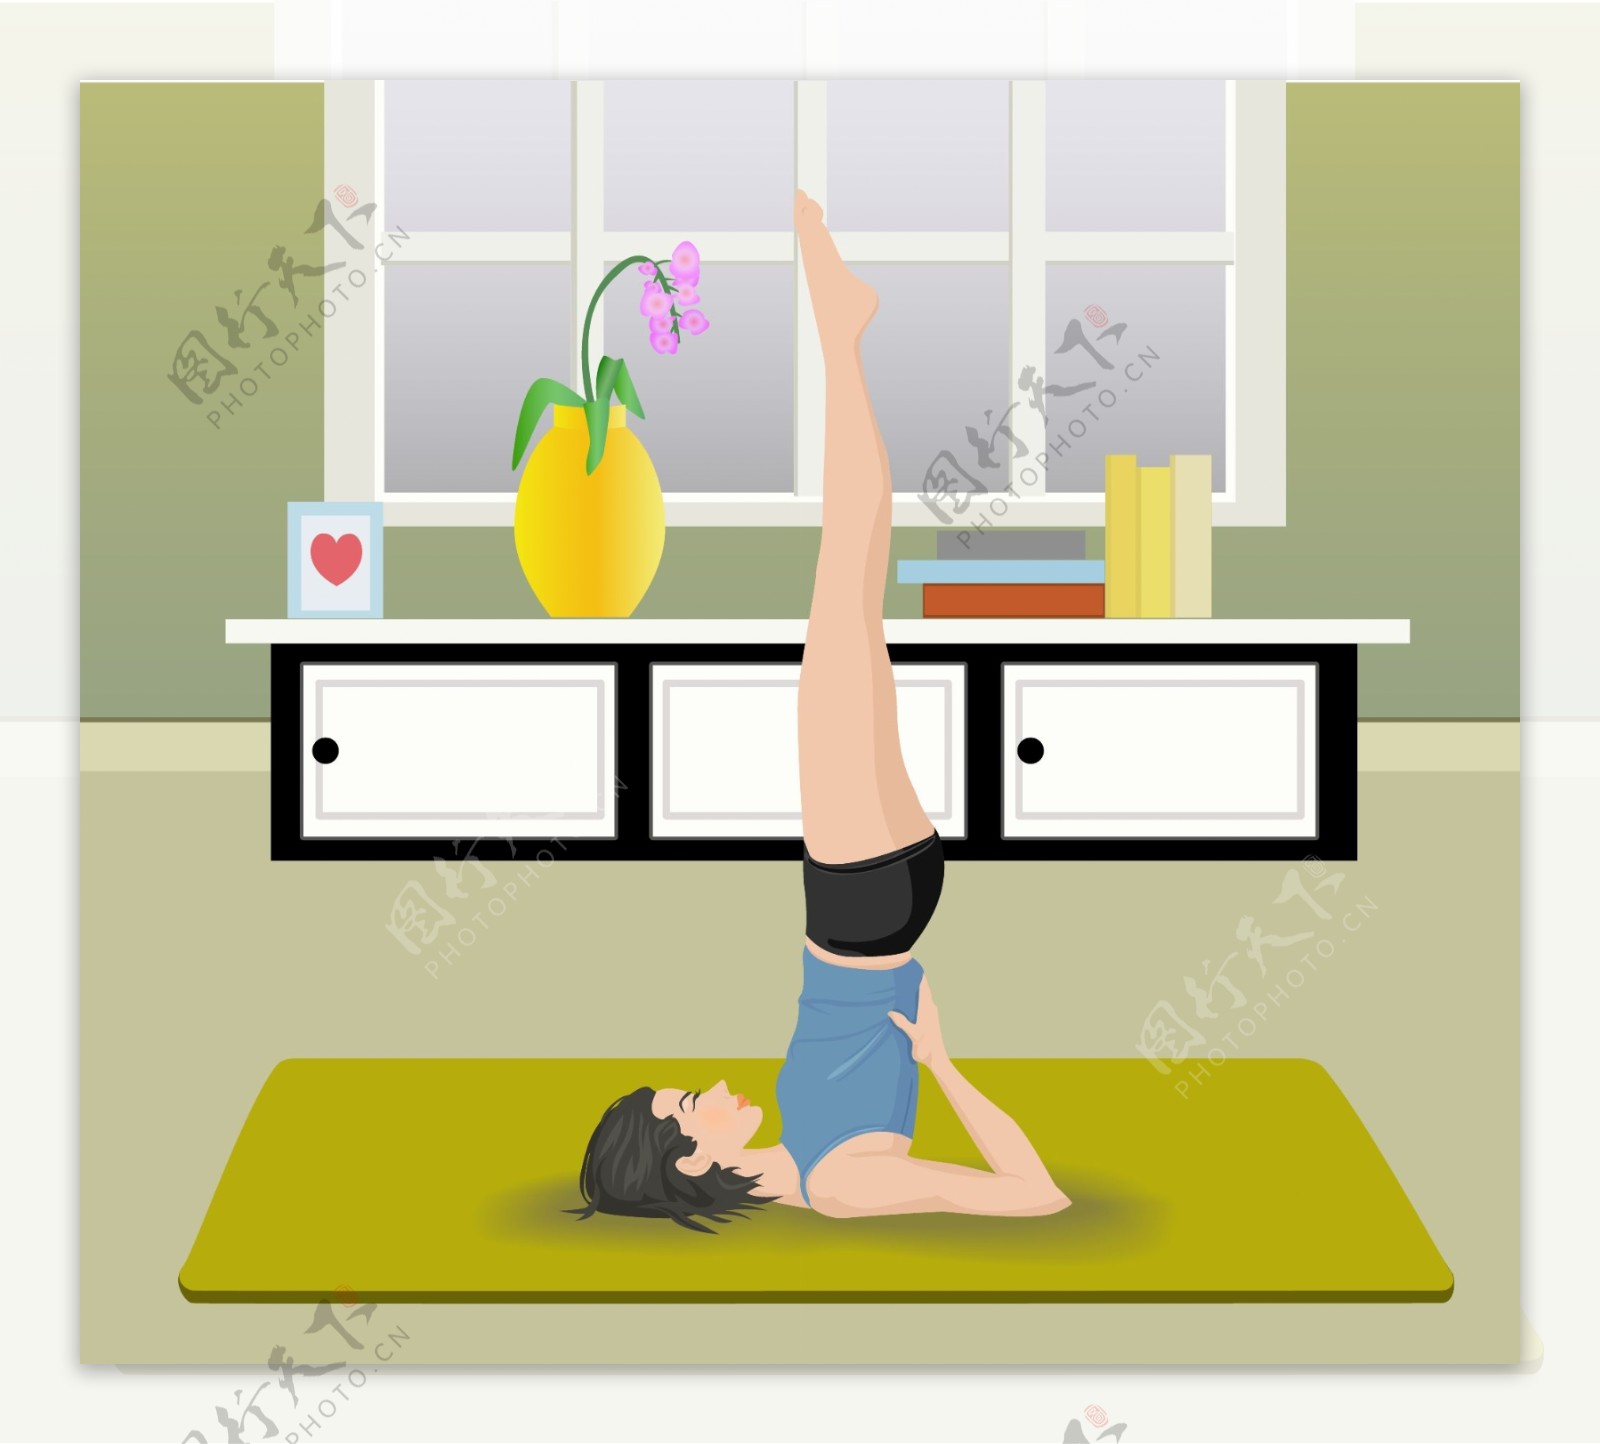 健身女性瑜伽休闲运动健康